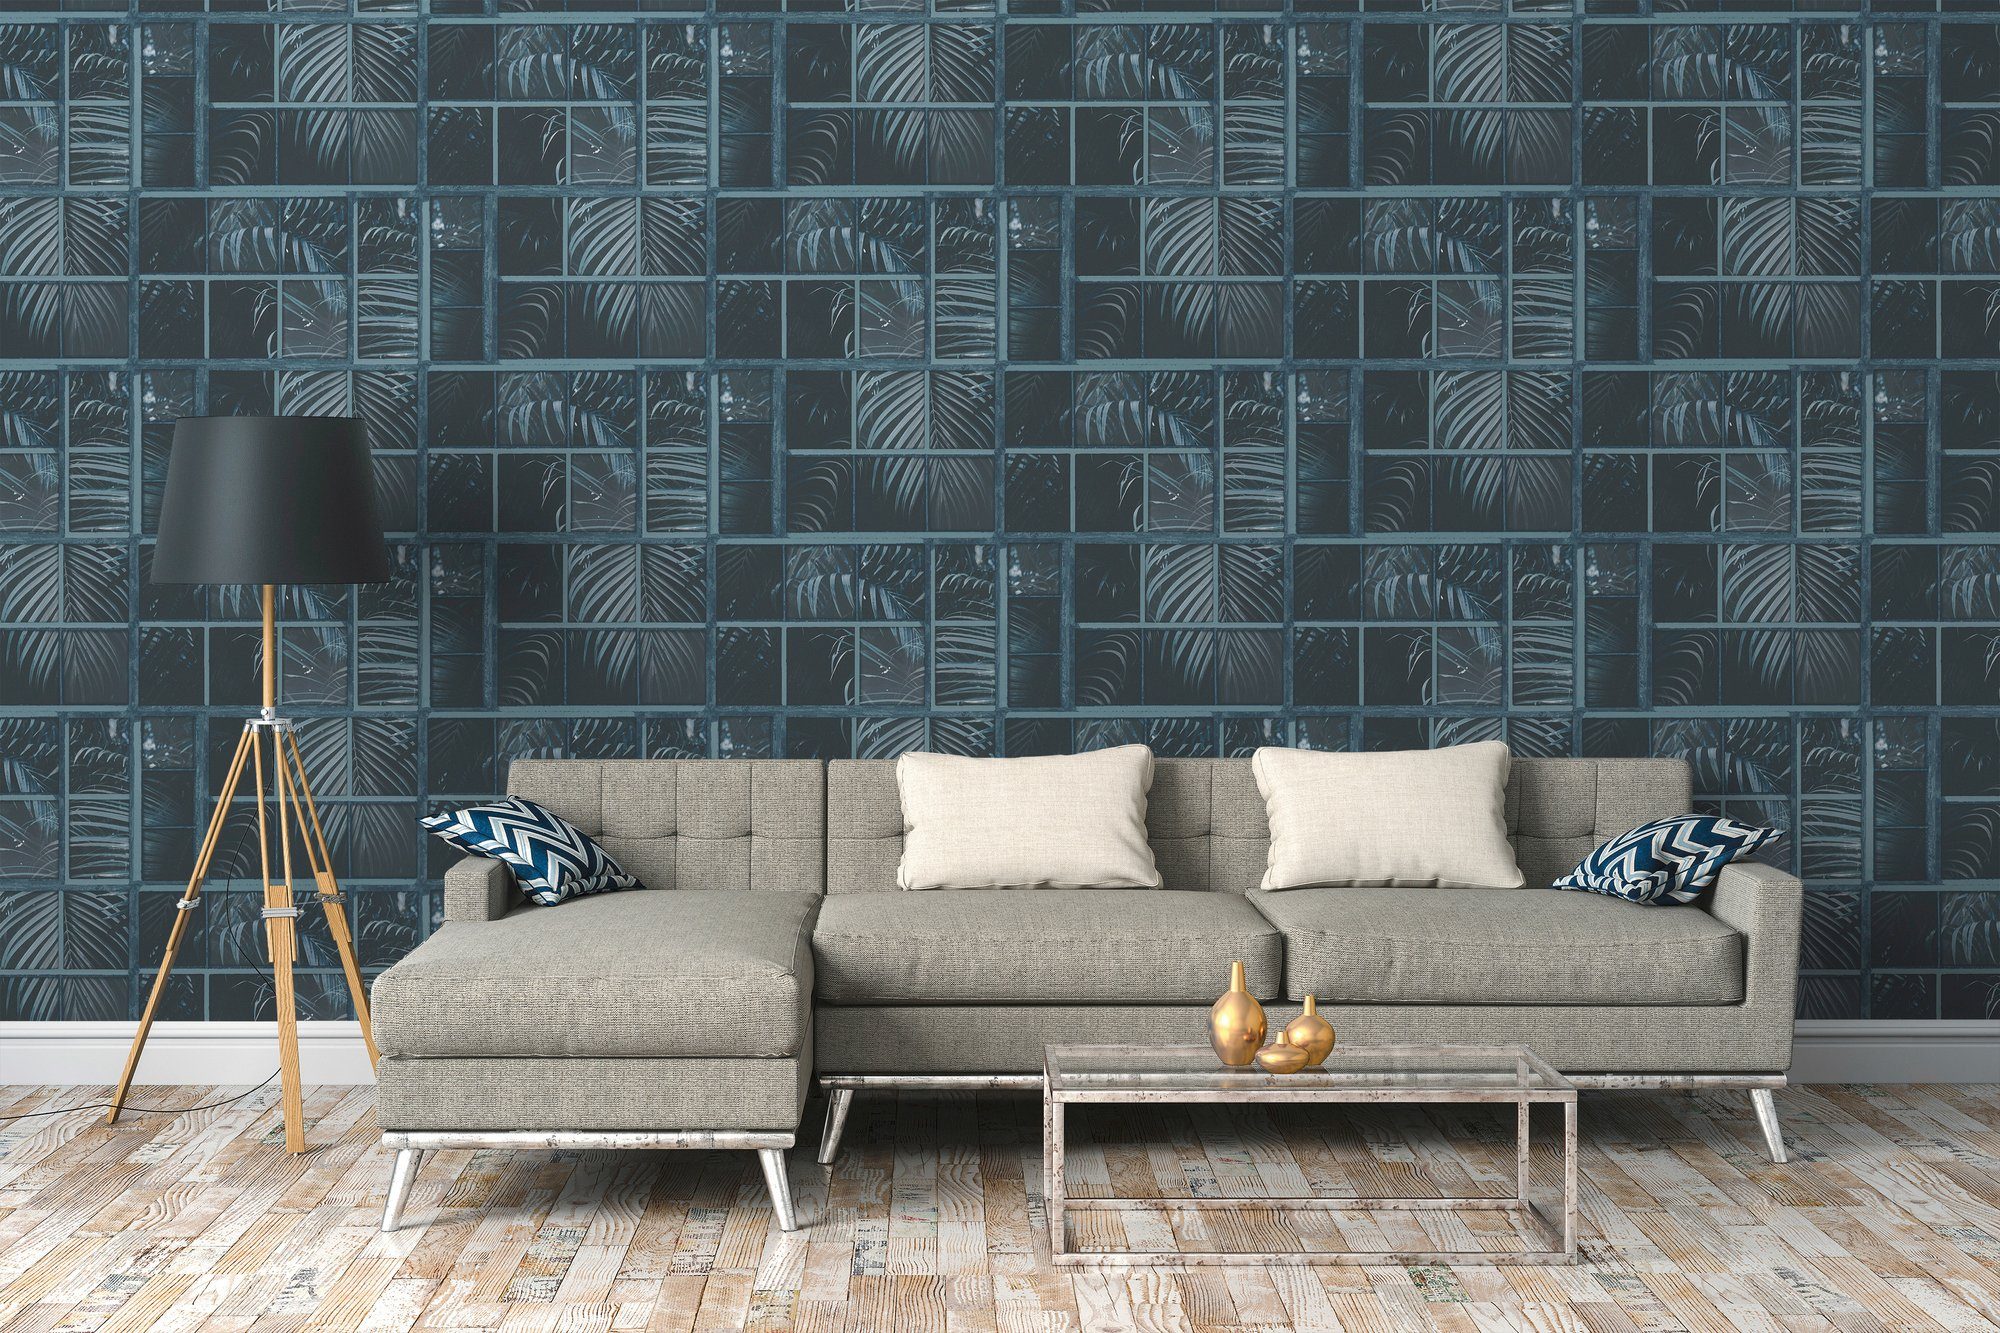 Vliestapete Industrial, walls floral, Palmen Dschungeltapete schwarz/taubenblau living botanisch, Tapete